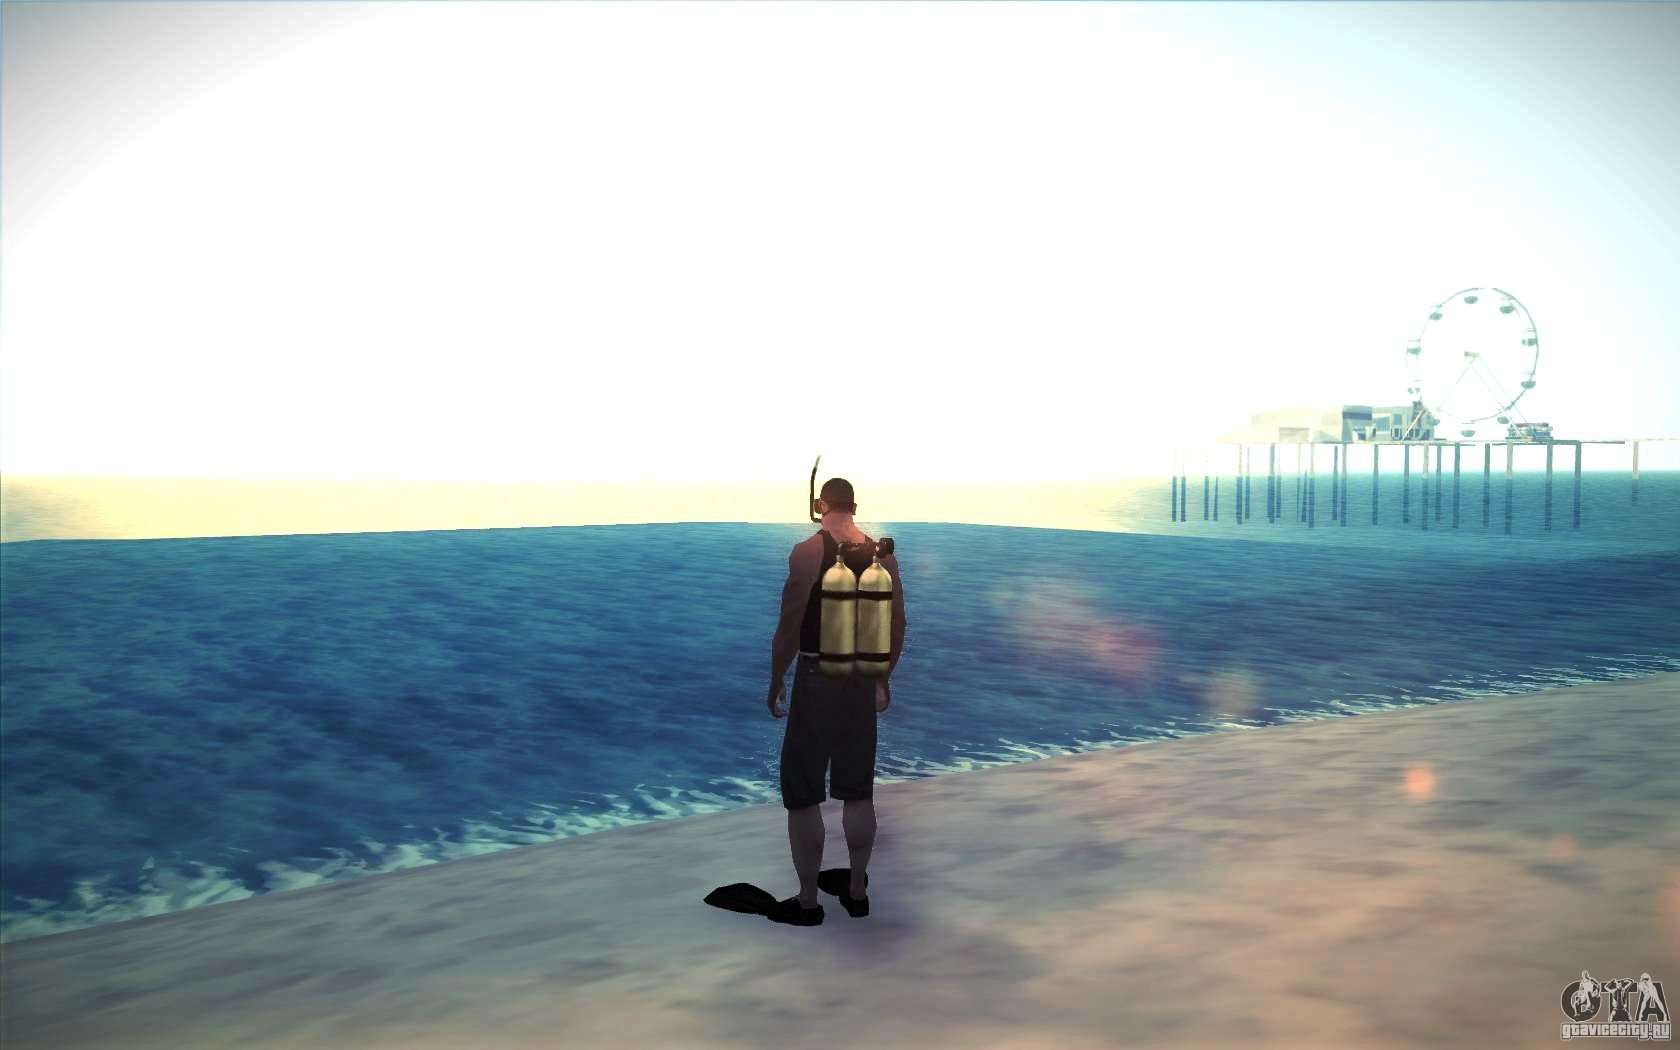 Como achar o equipamento e roupa para mergulhar em GTA 5?